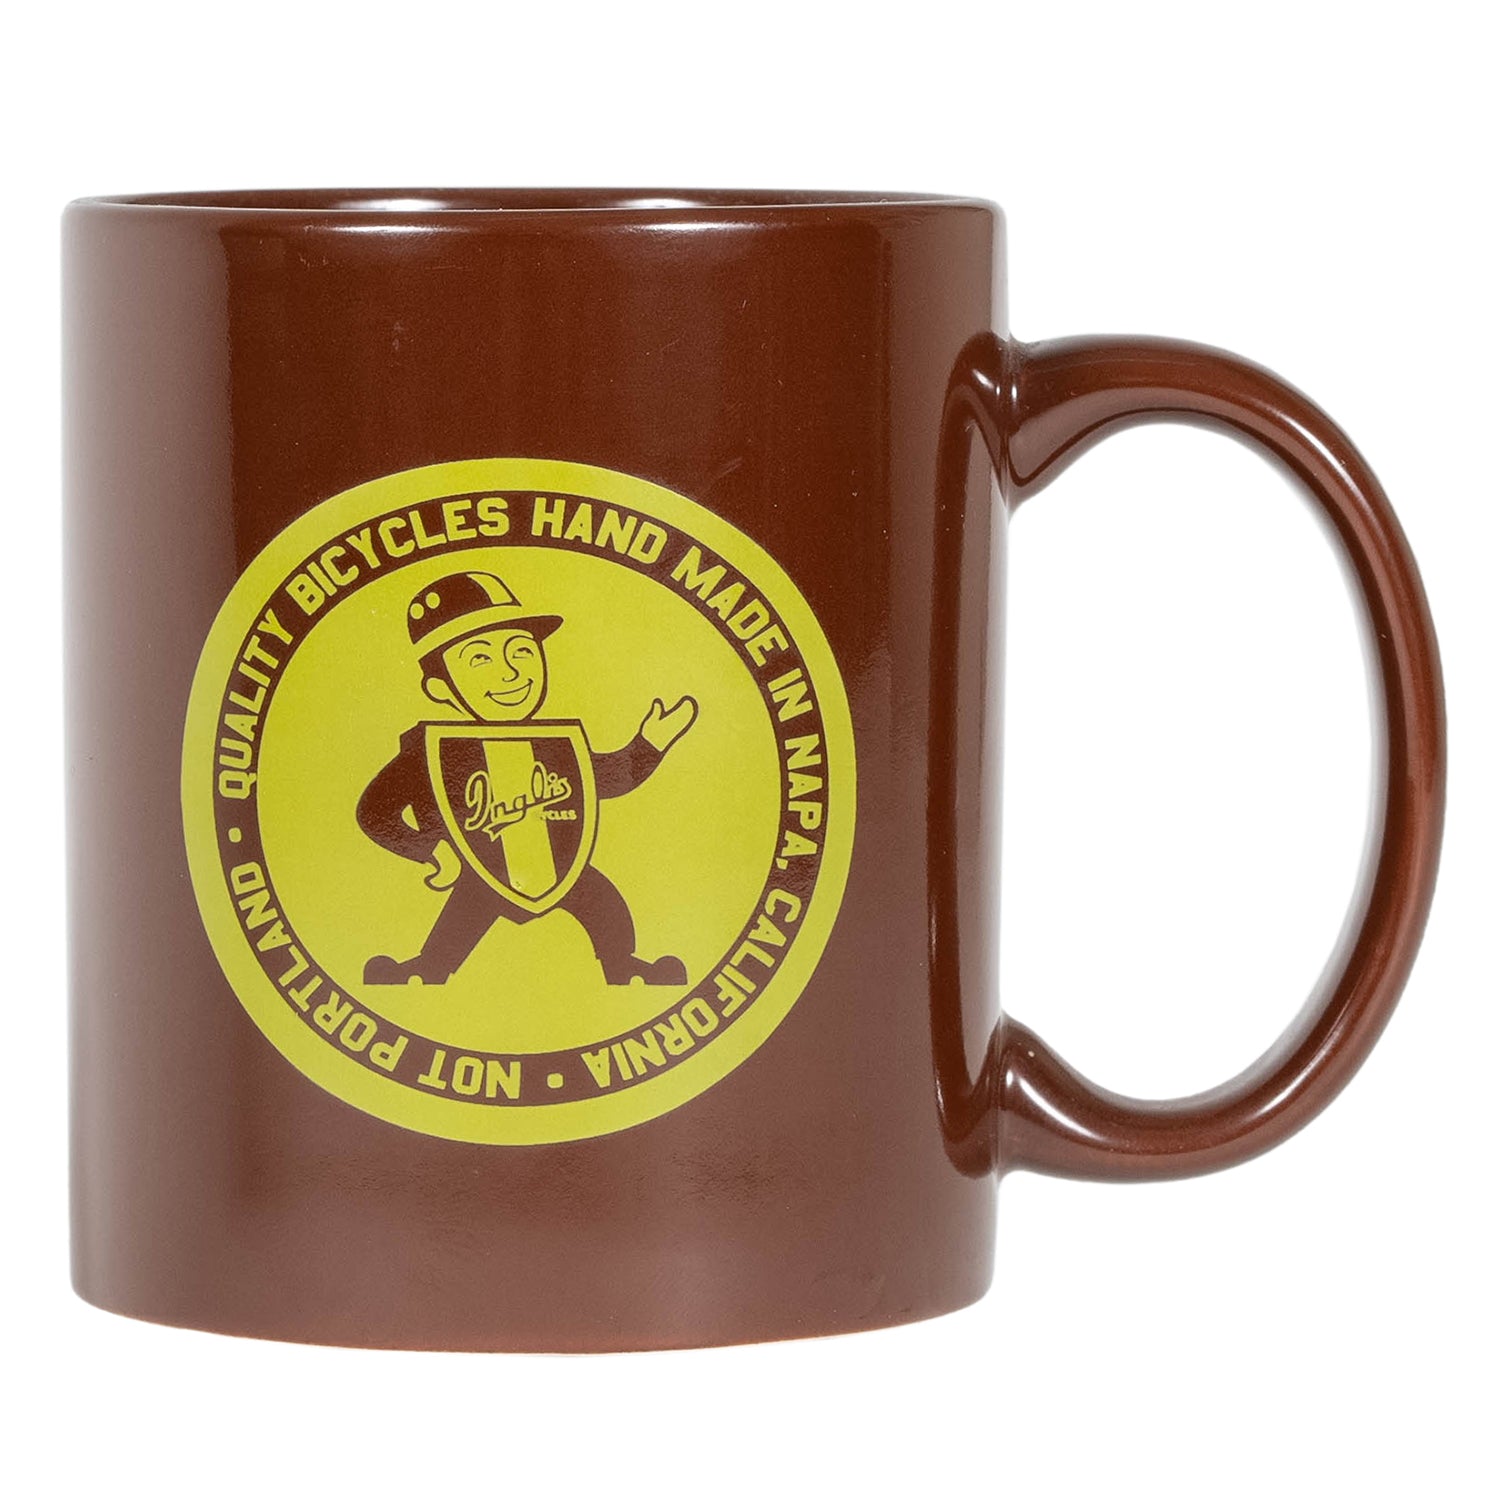 RETROTEC Mug Cup